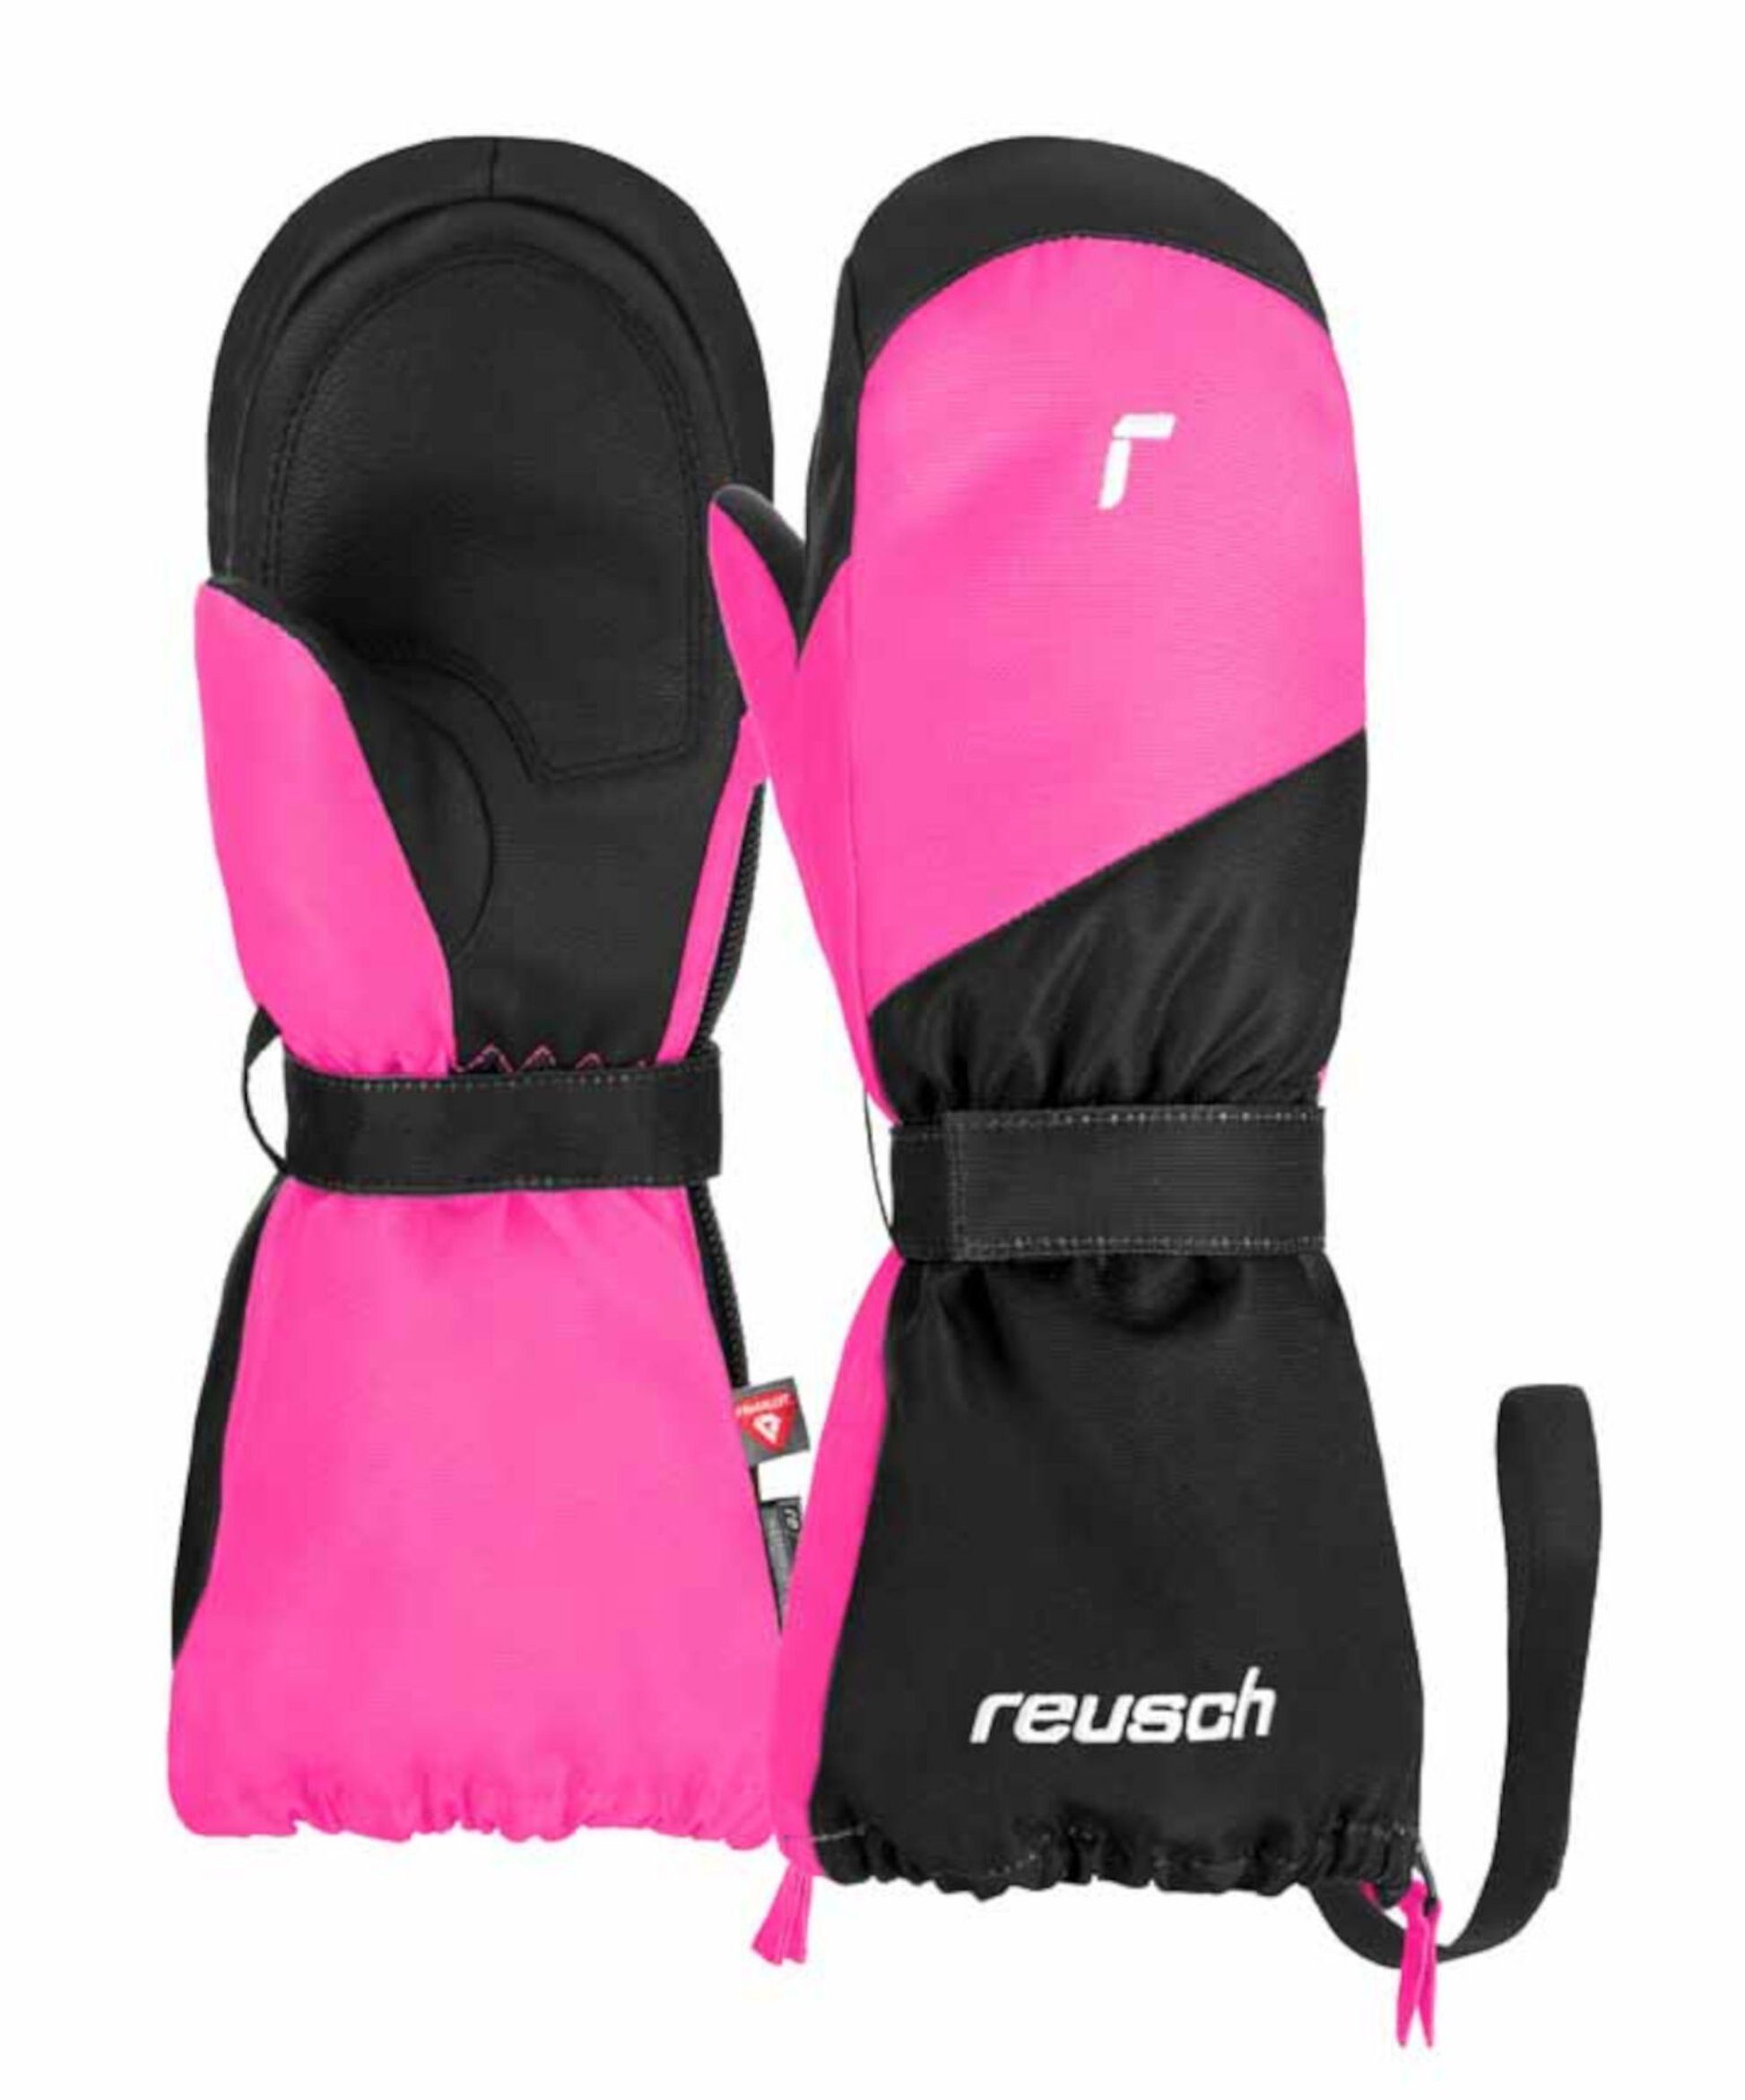 Snowboardhandschuhe Reusch pink 7720 Reusch XT Lucky glo black R-TEX® / Mitten